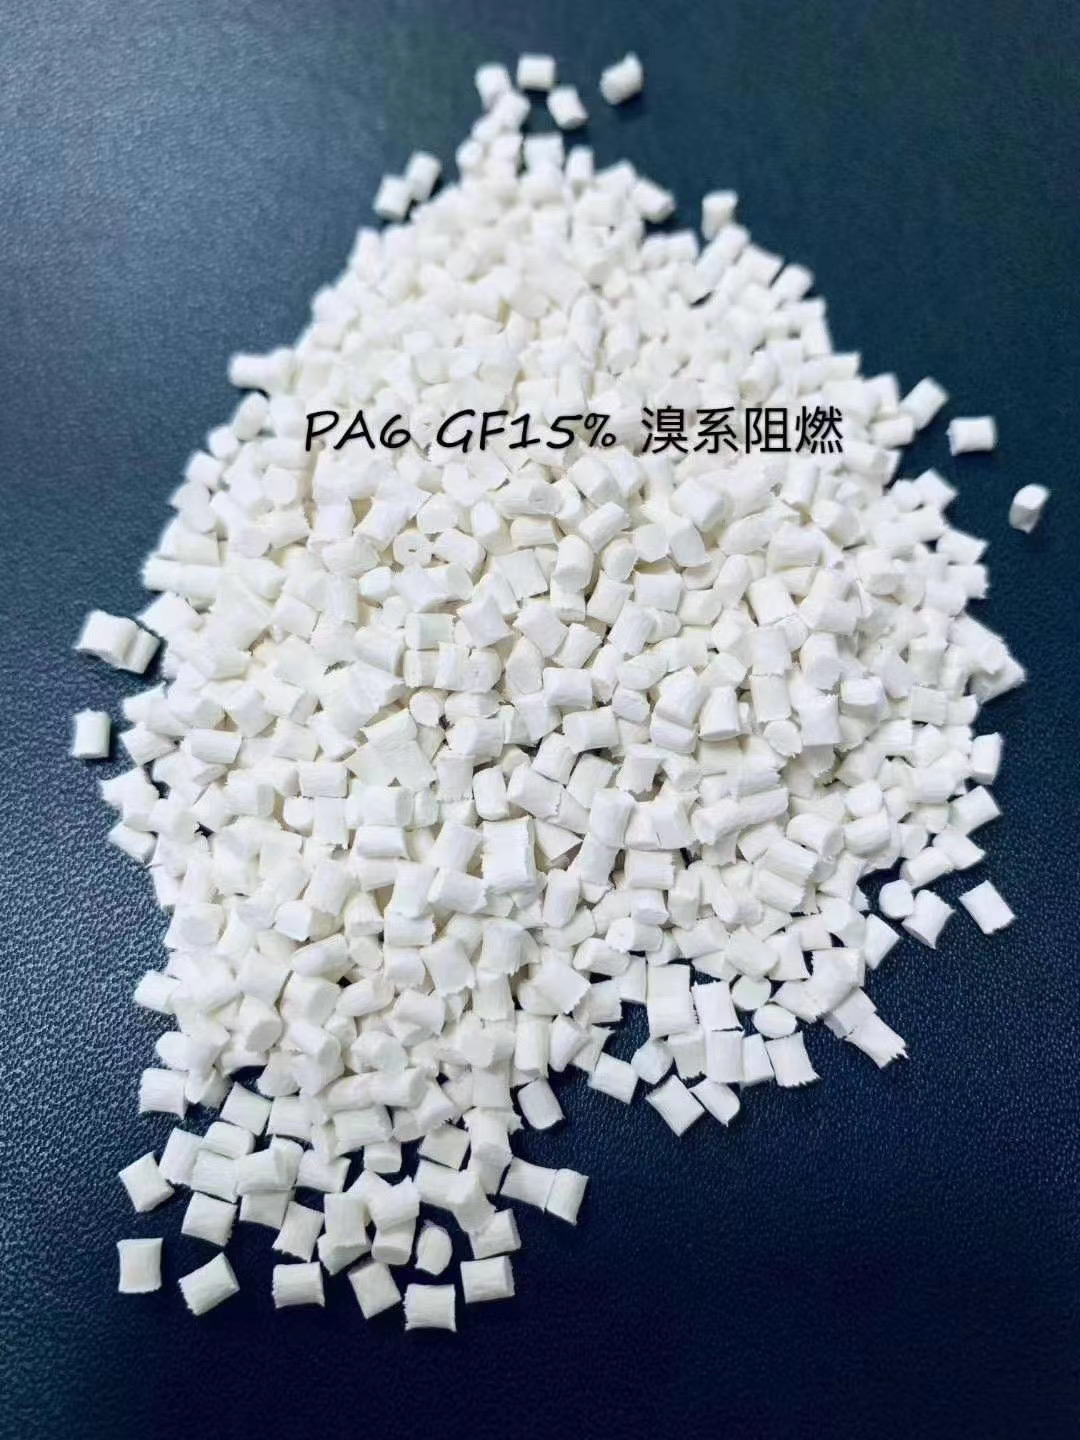 重庆聚碳酸酯塑料批发 价格优惠